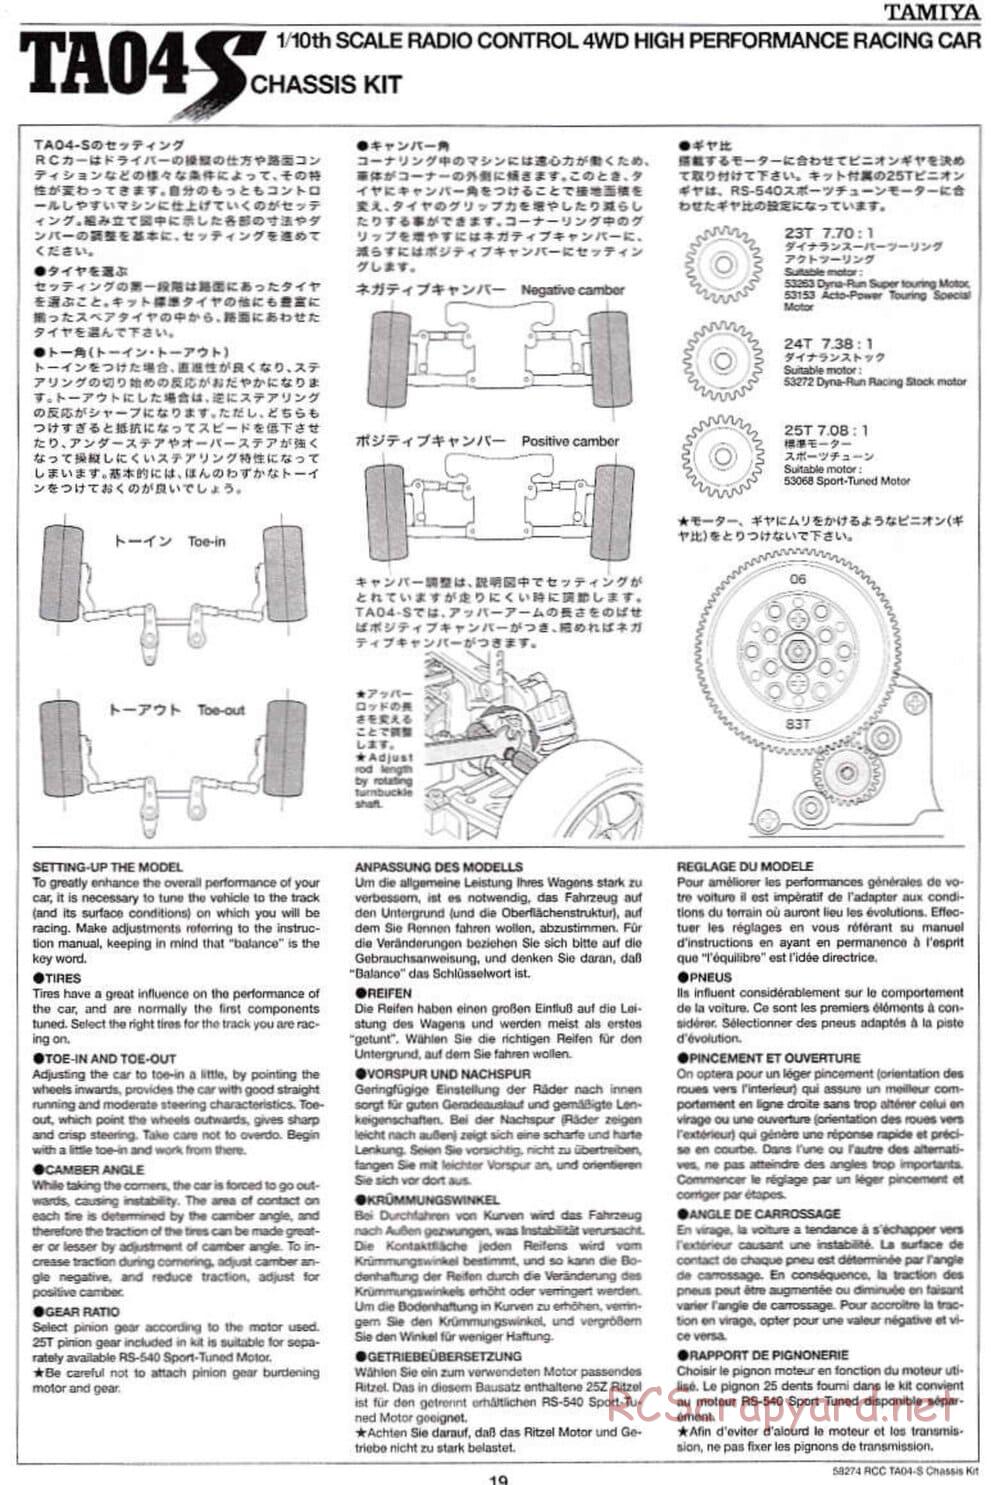 Tamiya - TA-04S Chassis - Manual - Page 19